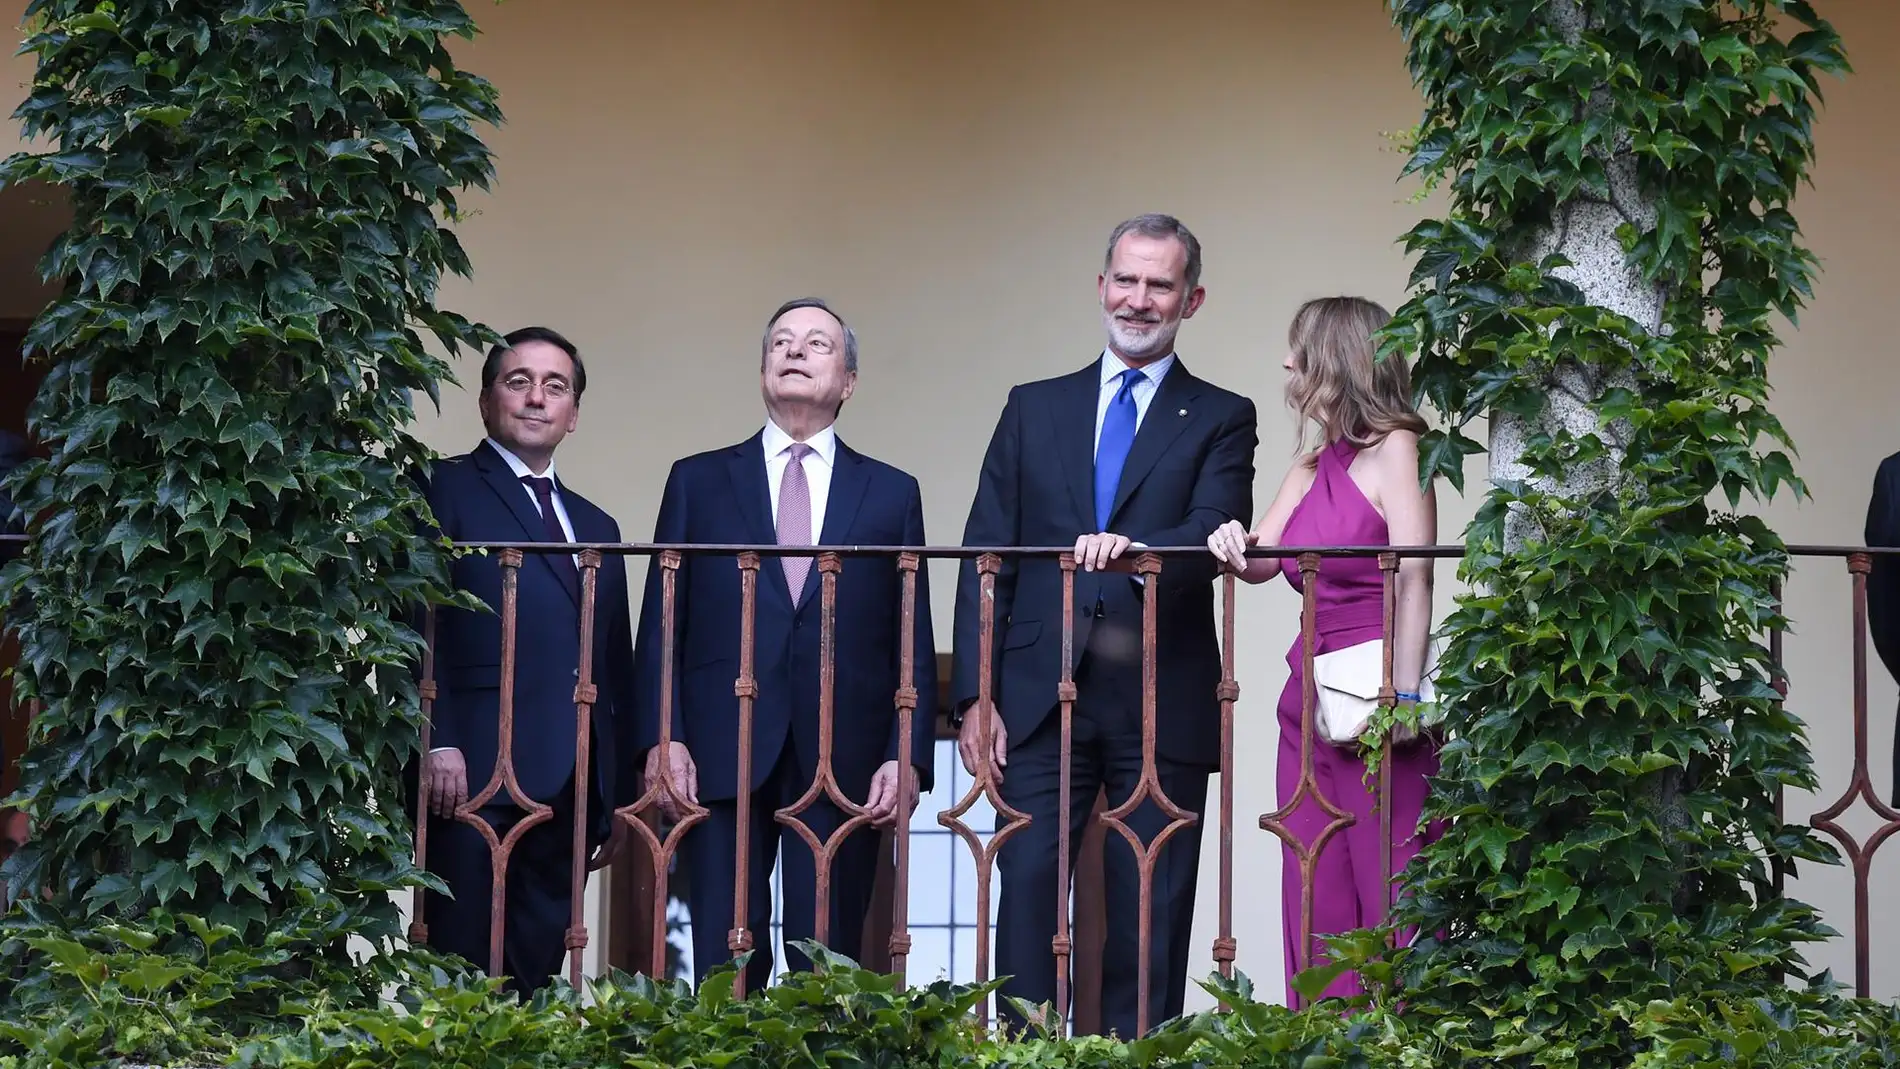 El Rey Felipe VI ofrece una cena de bienvenida en Yuste con motivo de la entrega del Premio Carlos V a Mario Draghi este viernes